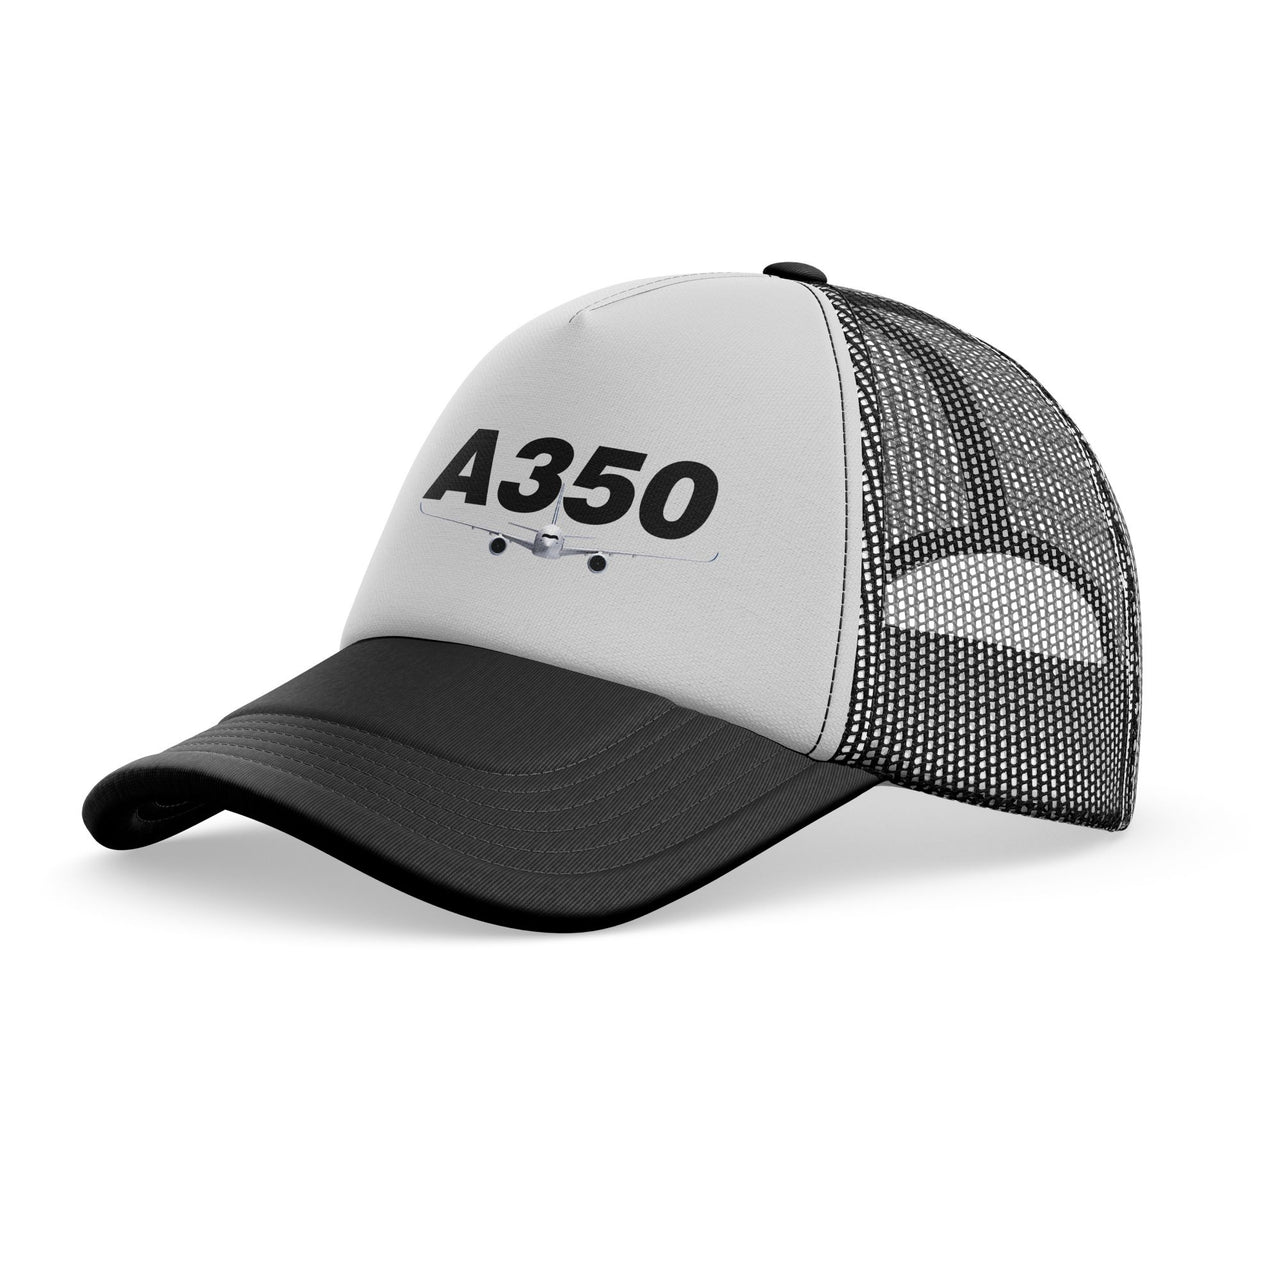 Super Airbus A350 Designed Trucker Caps & Hats